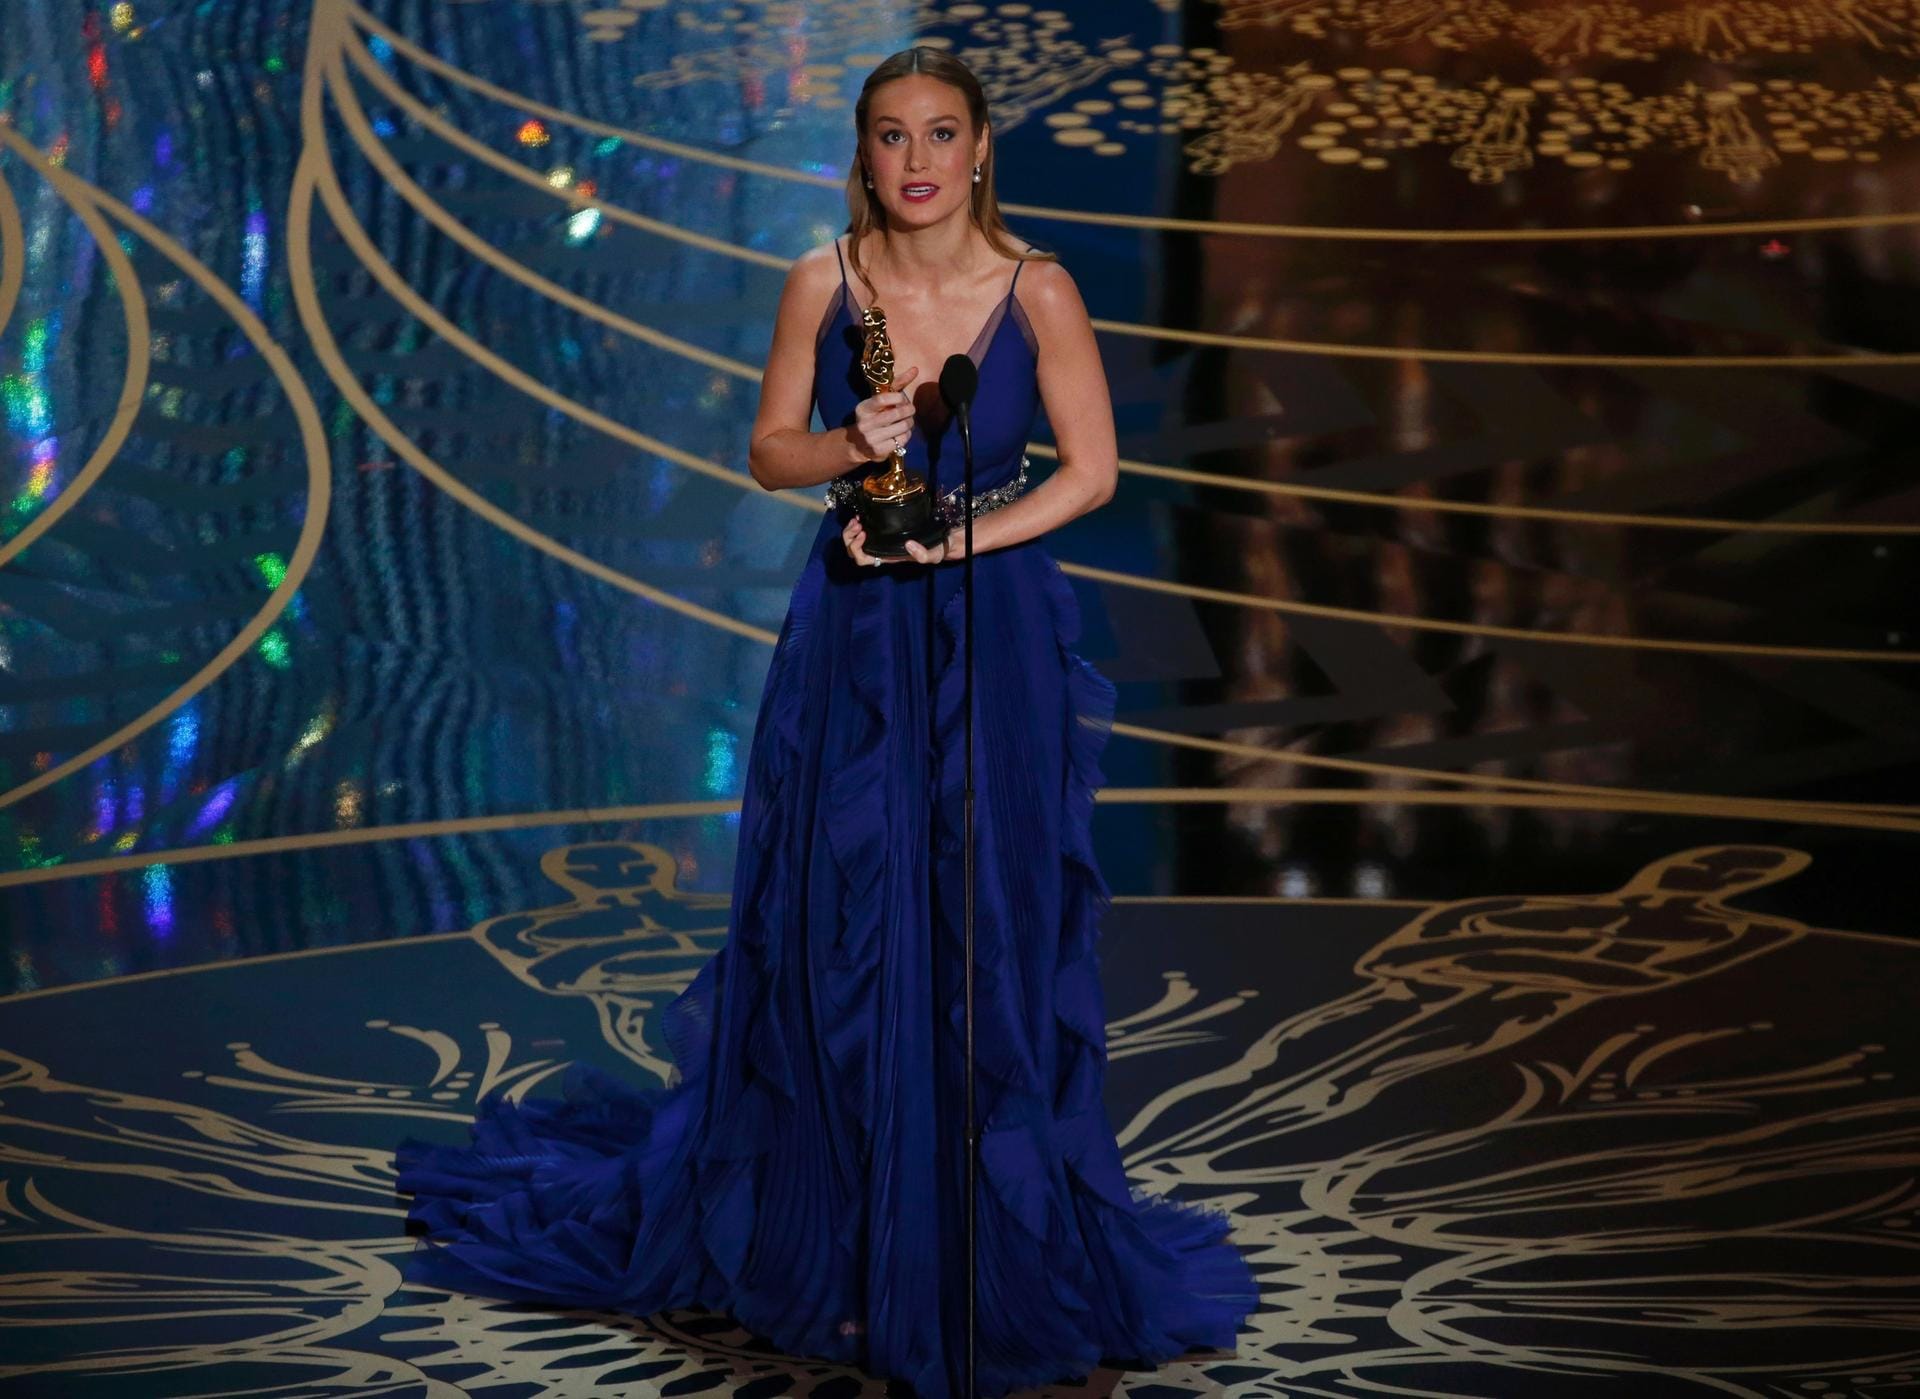 Die erst 26 Jahre alte Schauspielerin Brie Larson konnte sich gegen ihre Mitnominierten durchsetzen. Sie erhält den Oscar als "Beste Hauptdarstellerin" für ihre Rolle in den Drama "Raum".